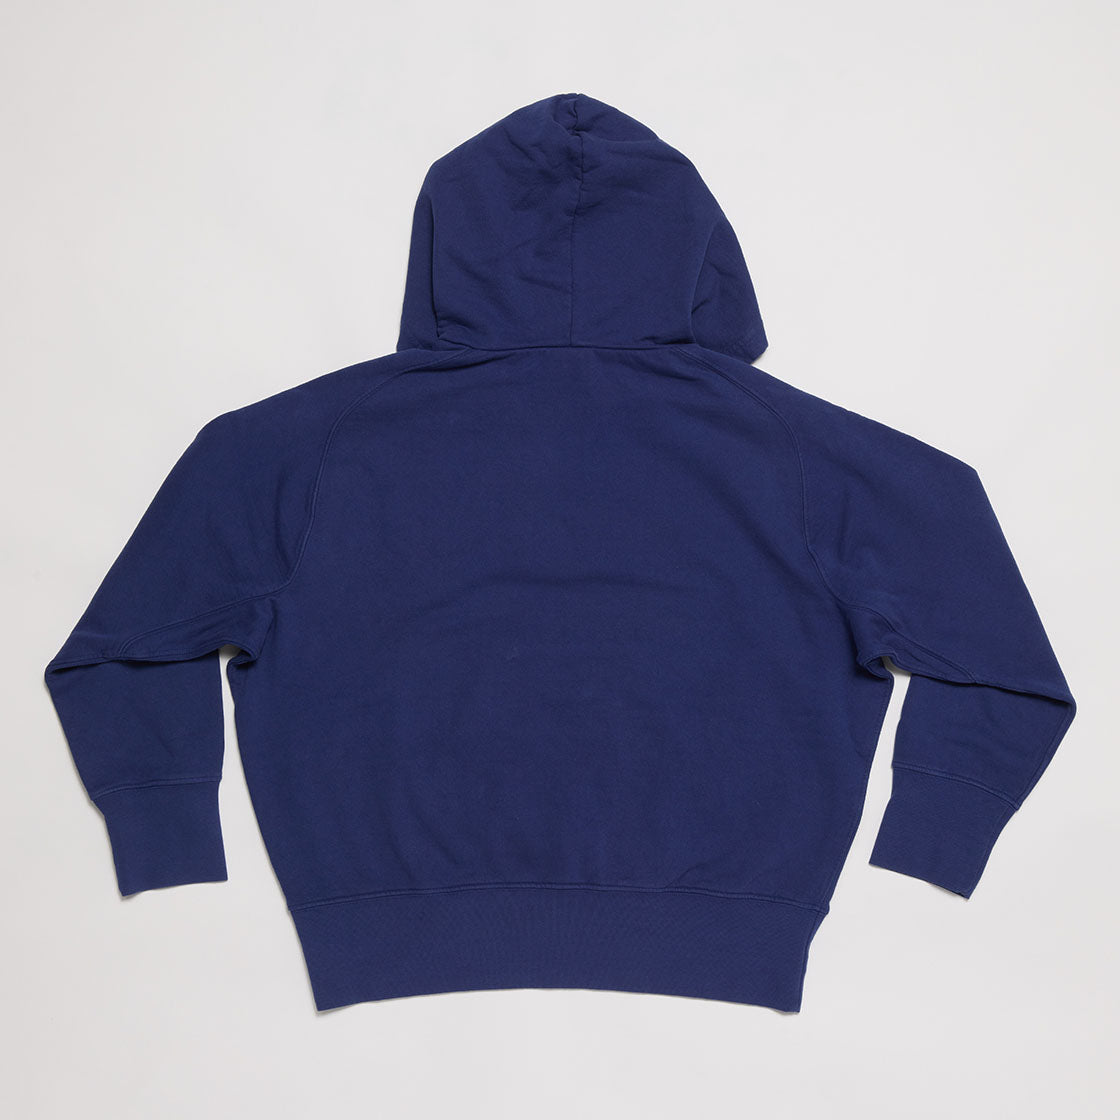 Y.R.P. Pull-over Hooded Sweatshirt (Navy)